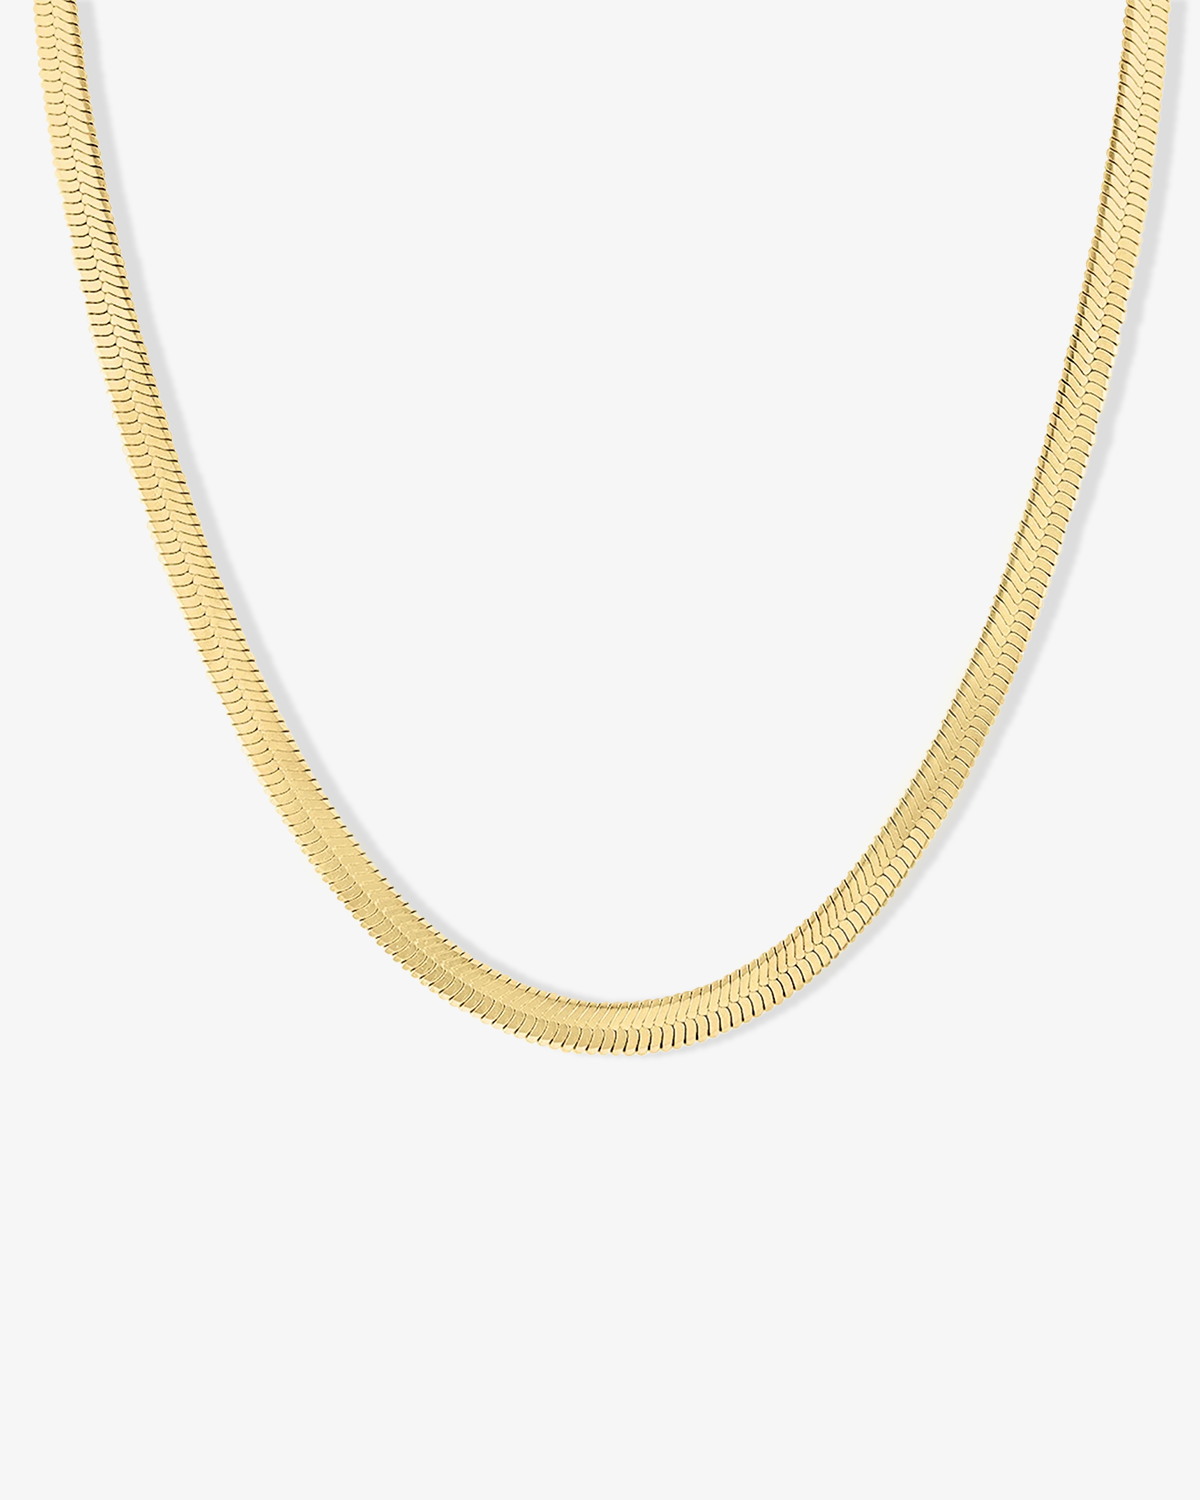 Maelle Bold Herringbone Chain Necklace